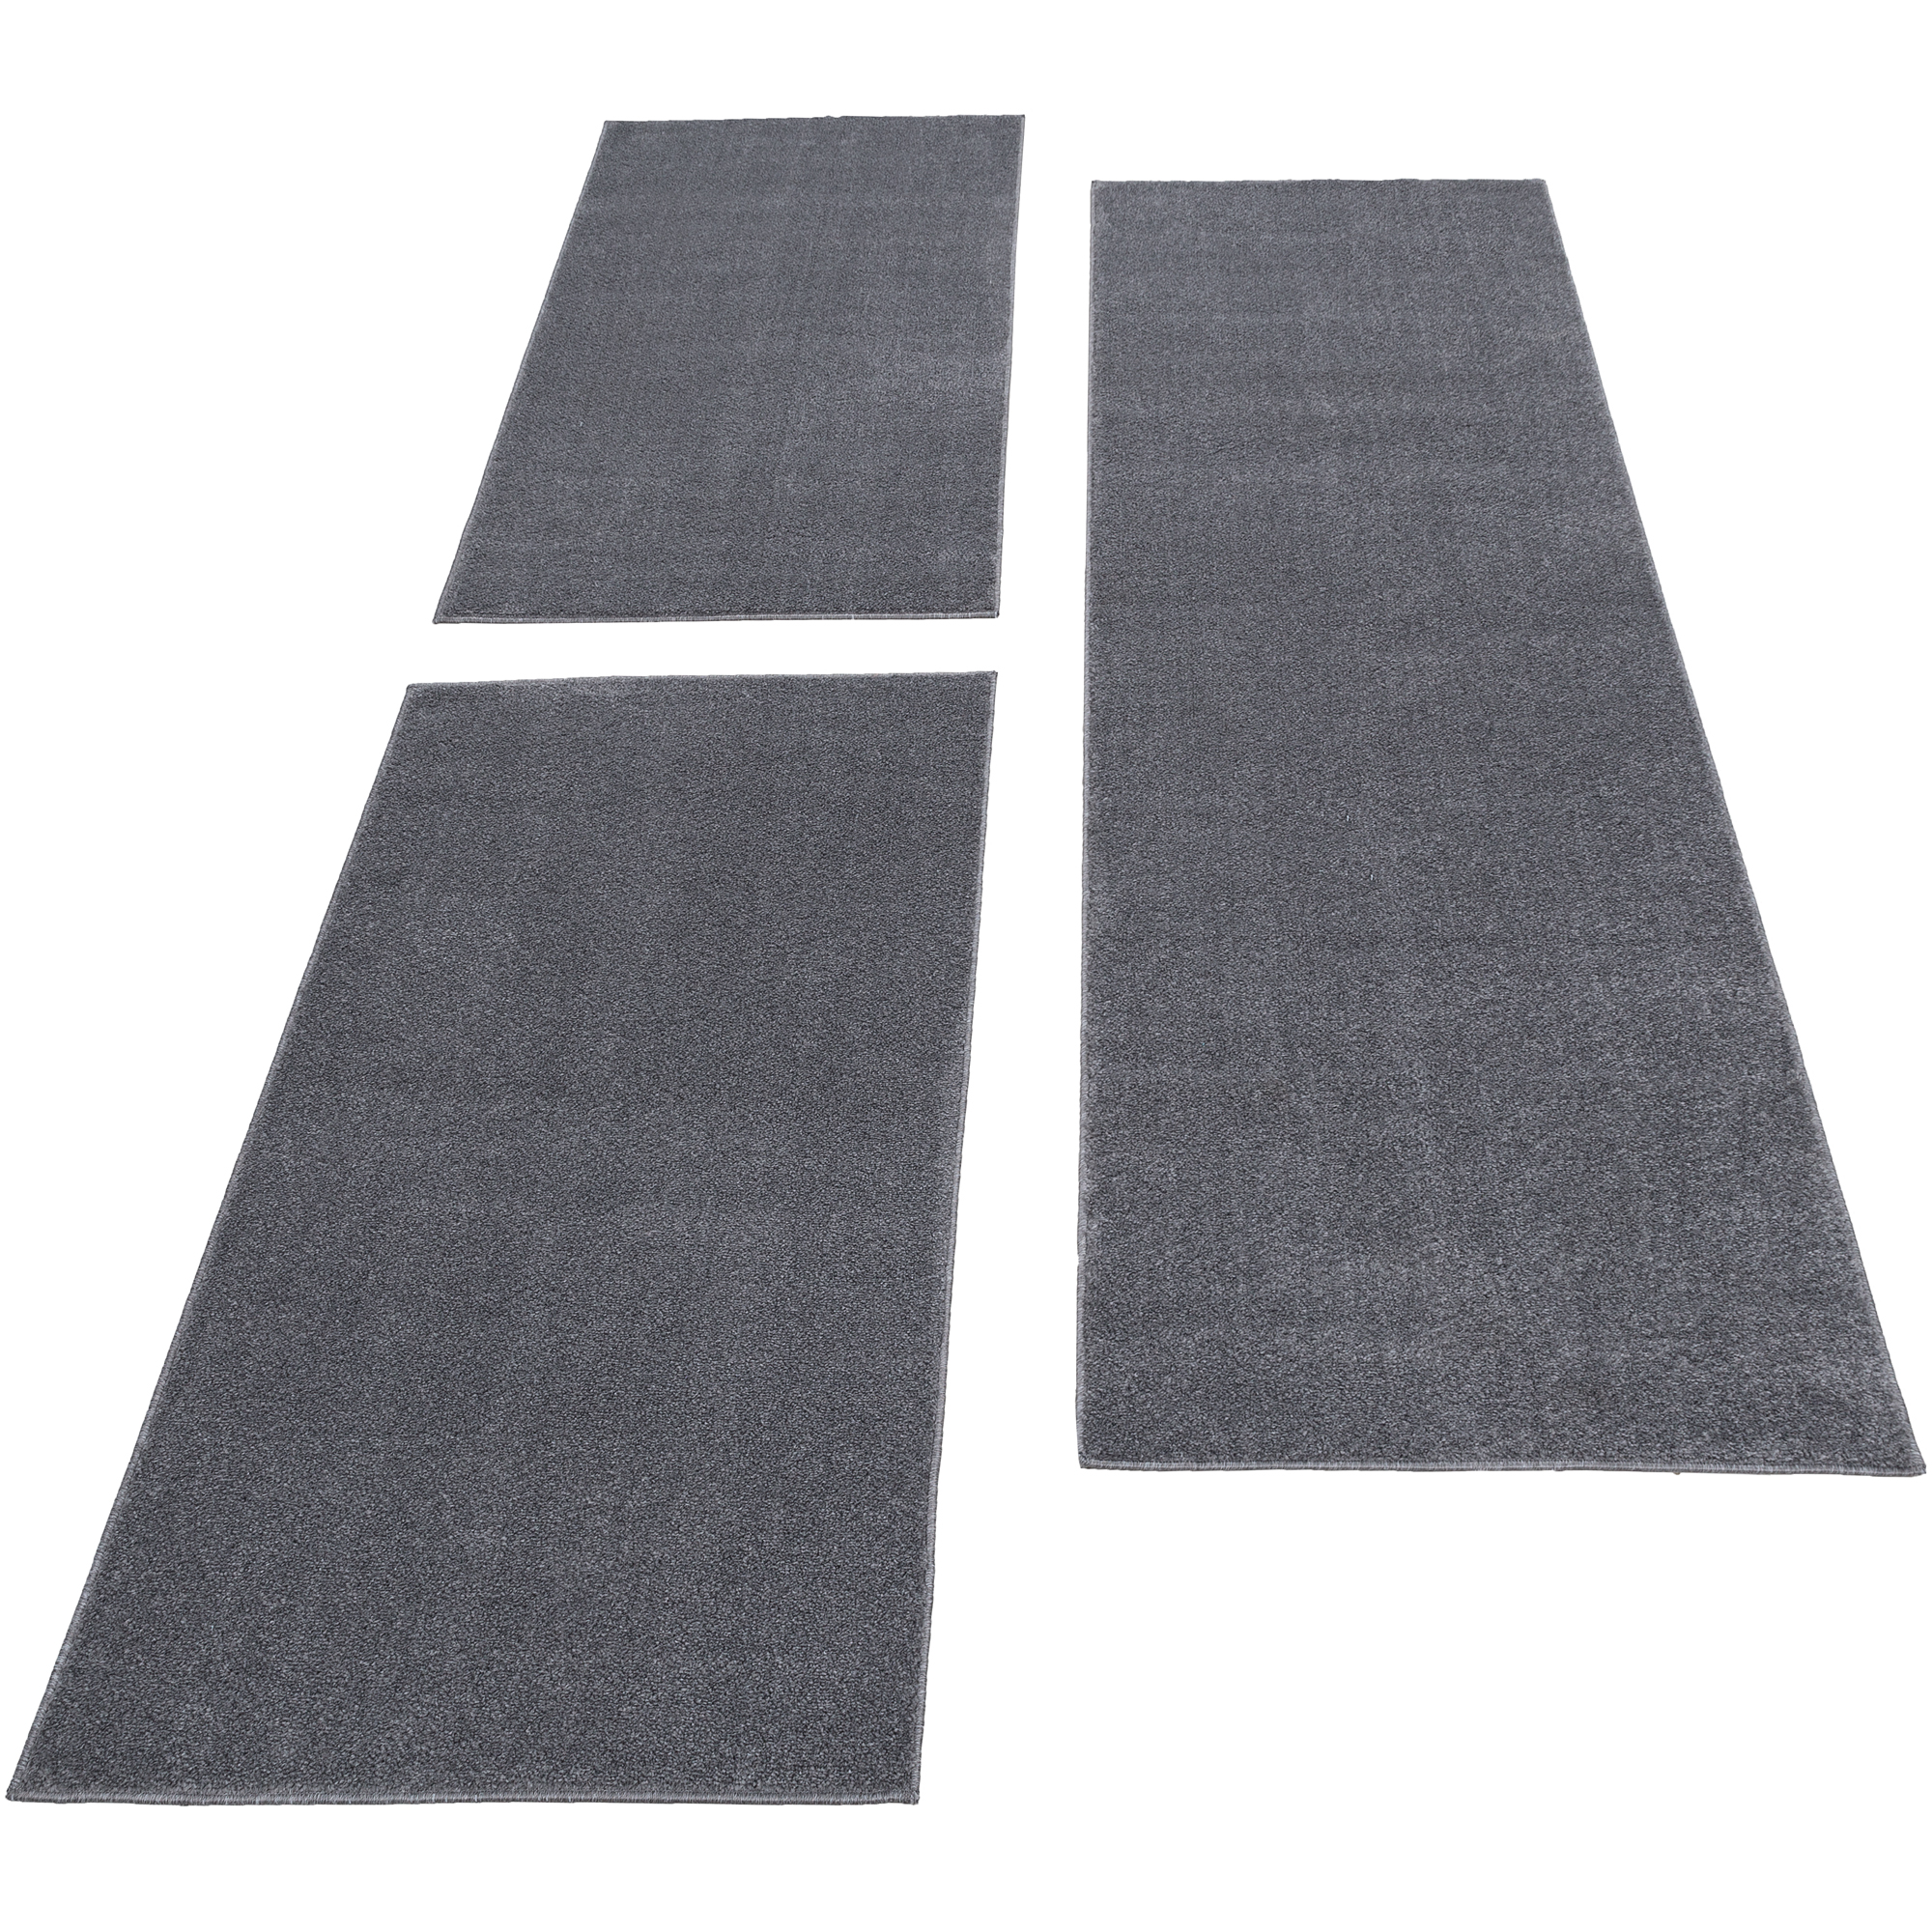 Bettumrandung Läufer Teppich Modern Kariert Muster 3 Teilig Grau Blau Weiß